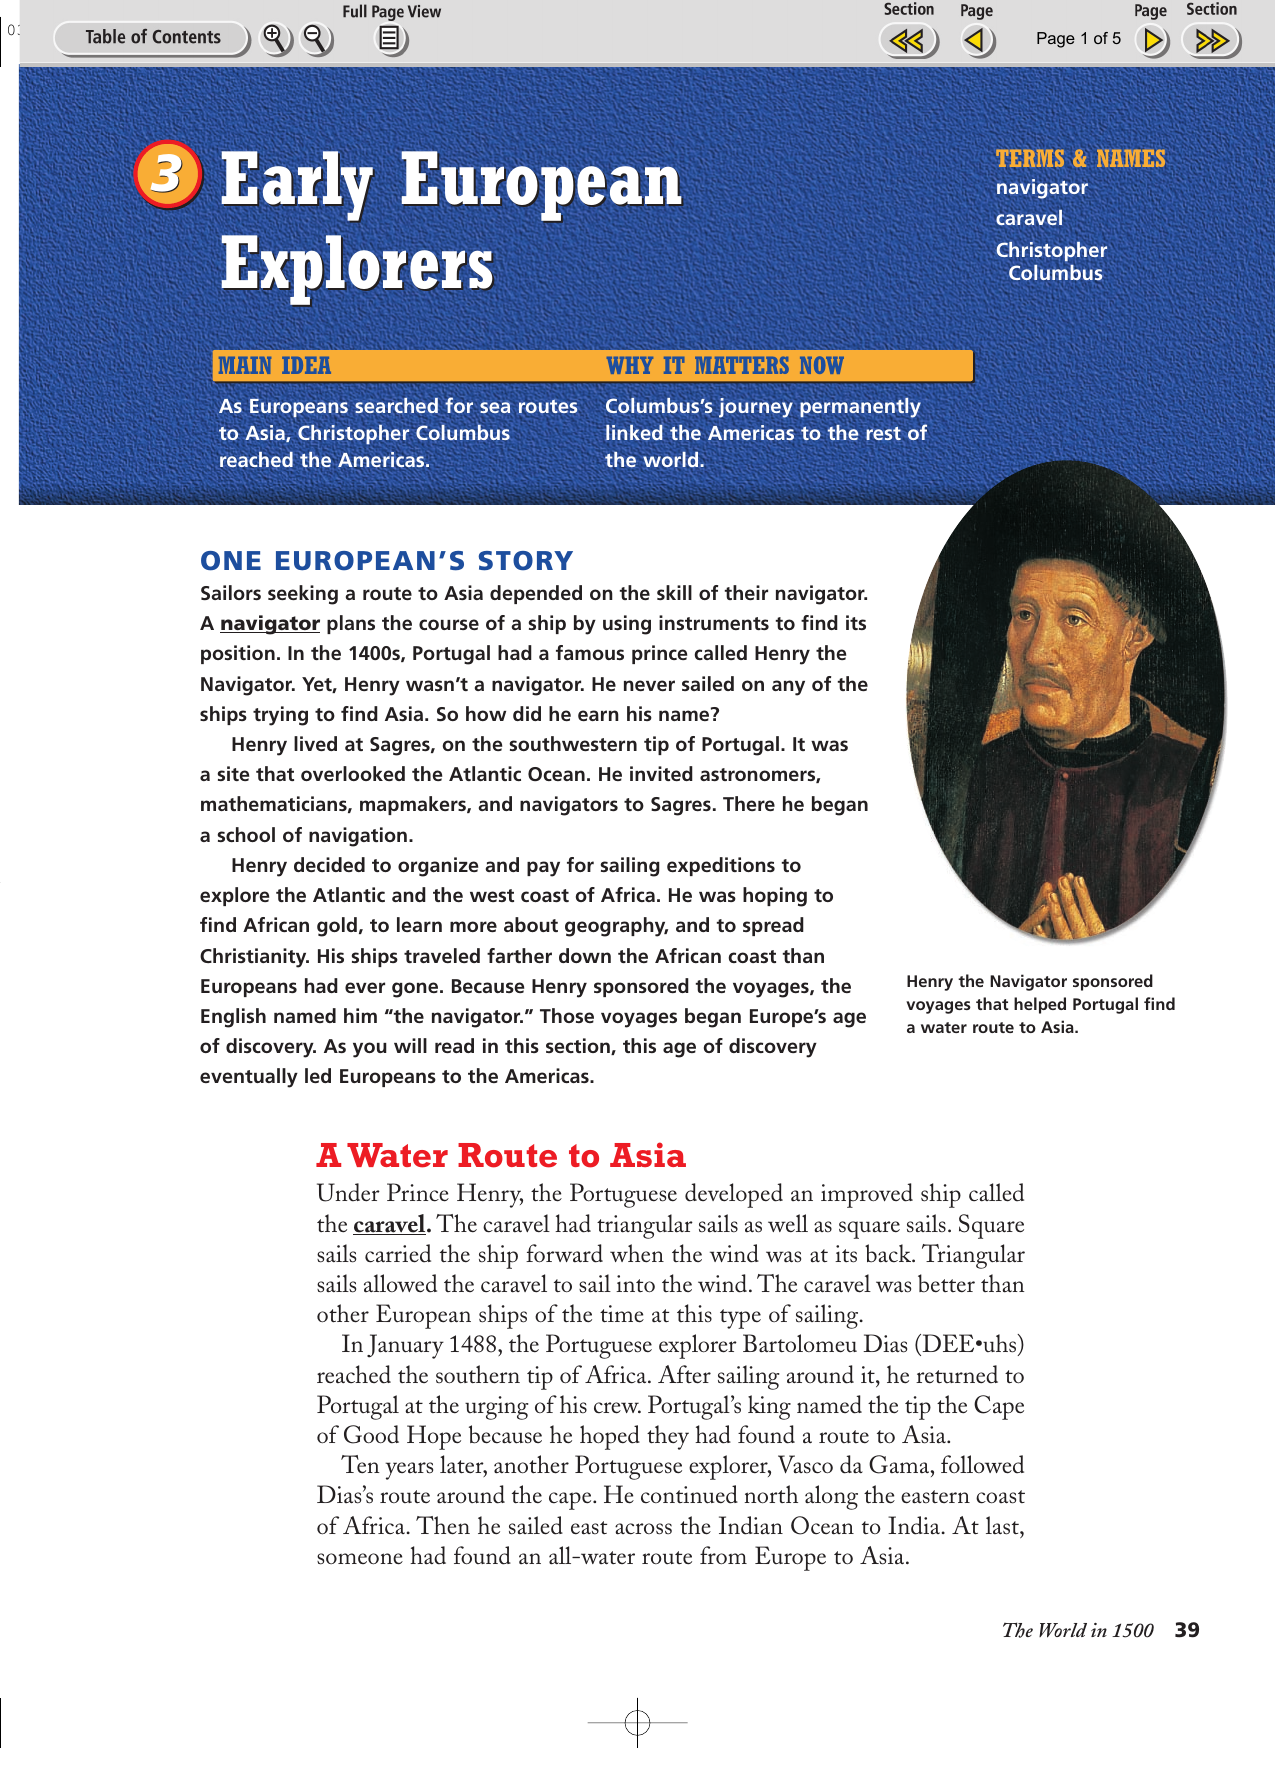 early-european-explorers-early-european-explorers